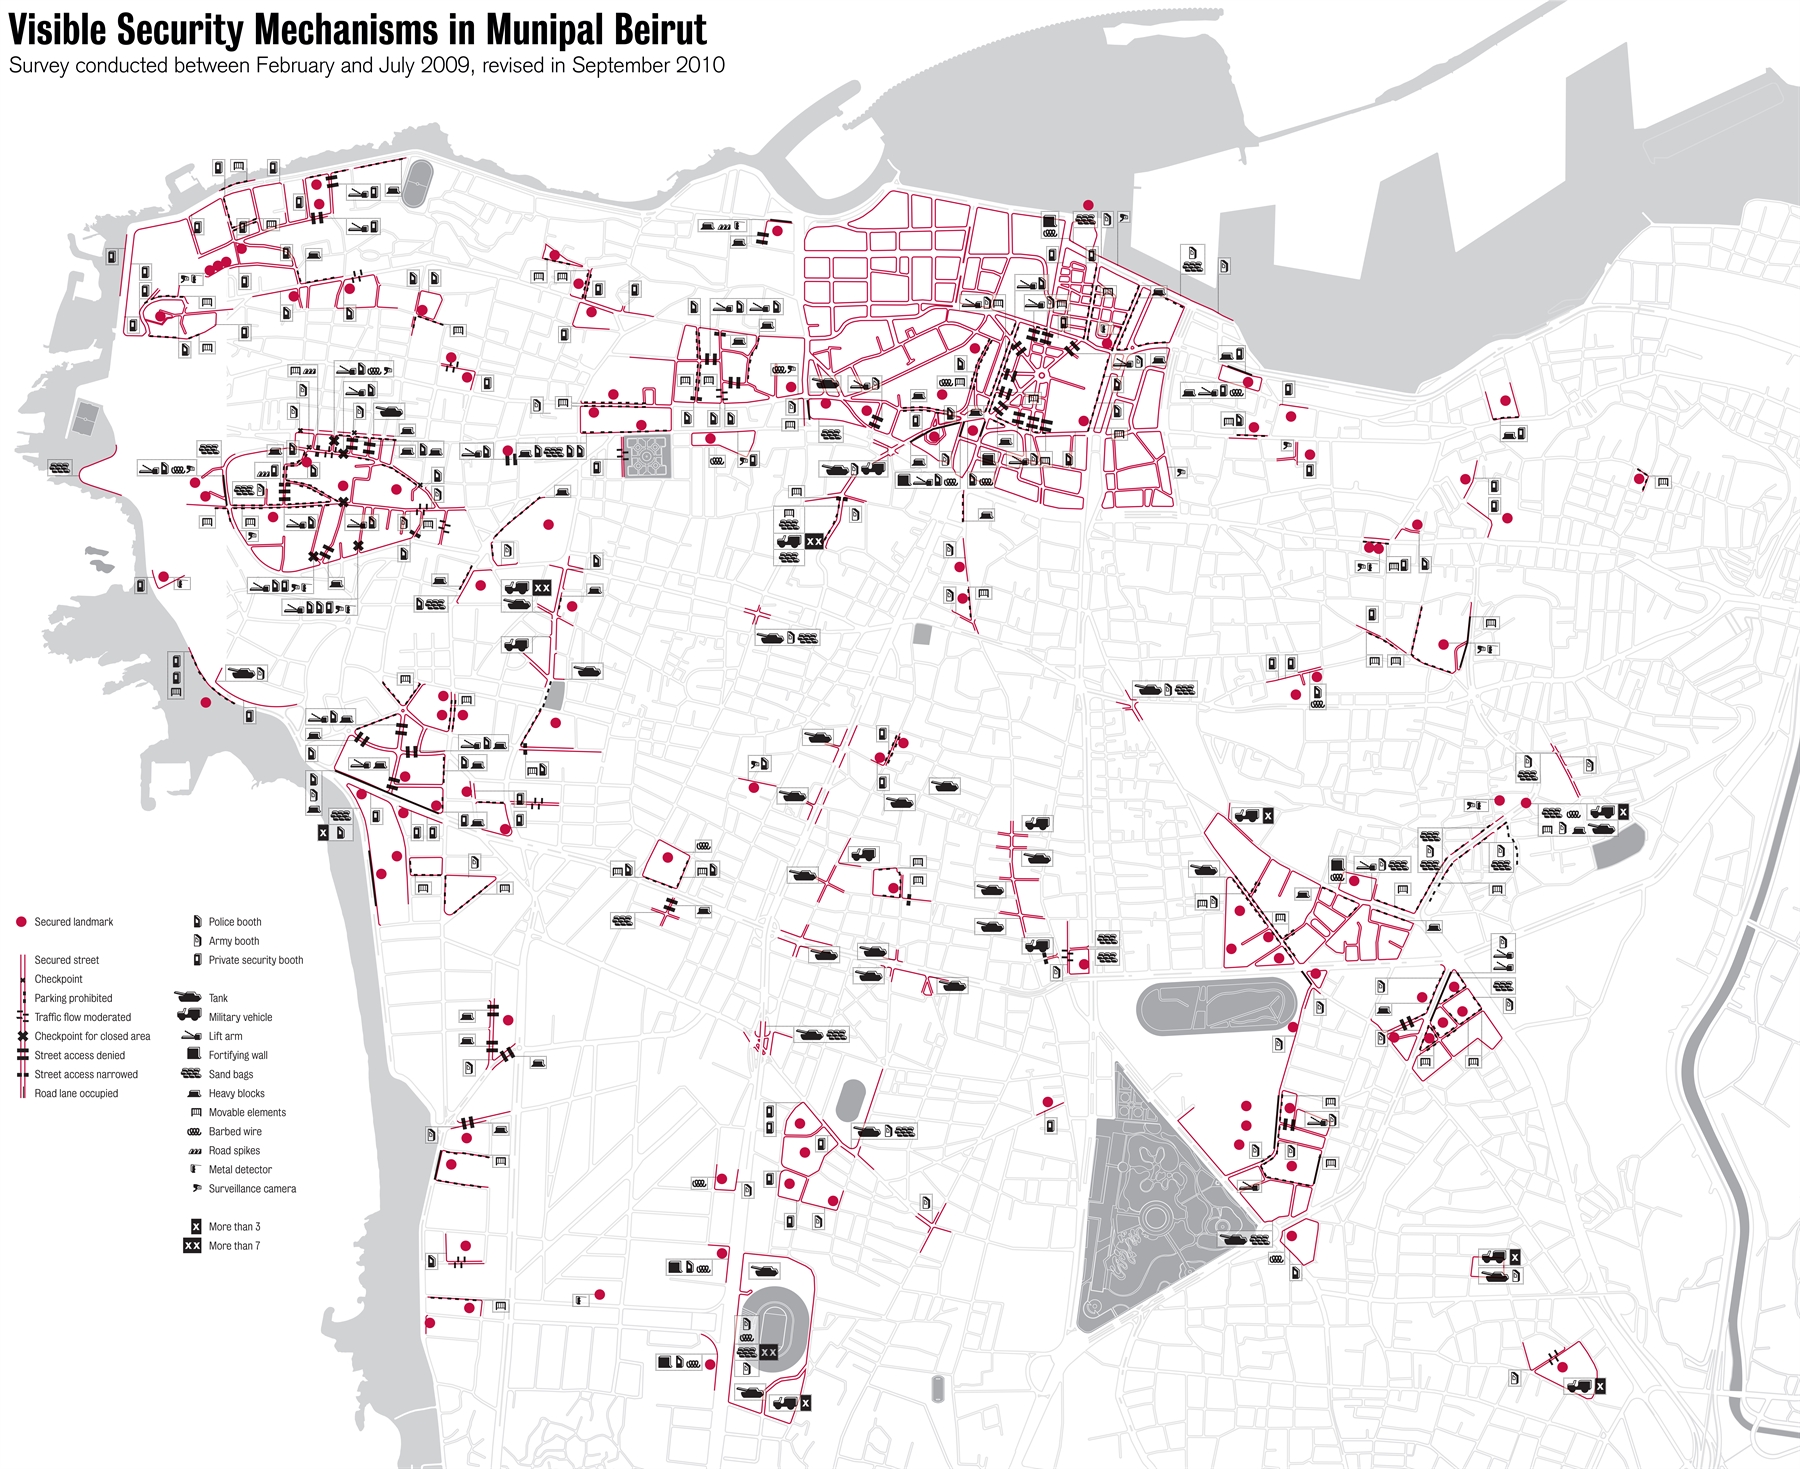 خريطة نشرت عدة مرات بين عامي 2010 و2015 تبيّن الآليات الأمنية الظاهرة في بيروت البلدية